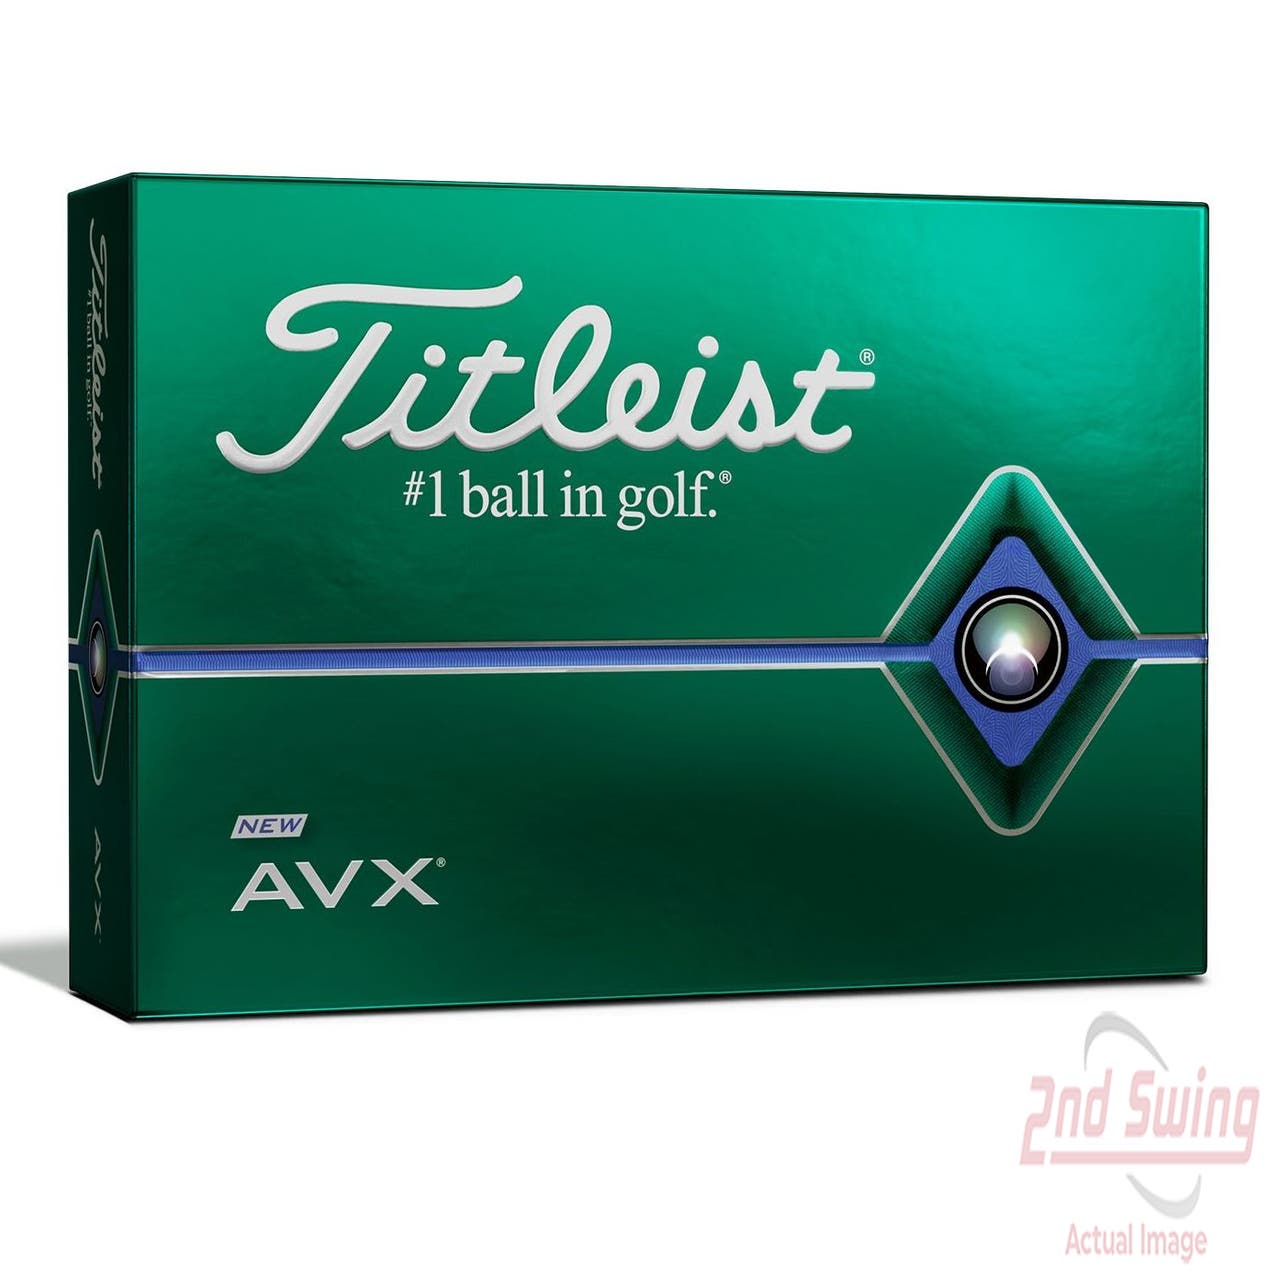 Titleist 2020 AVX Golf Balls